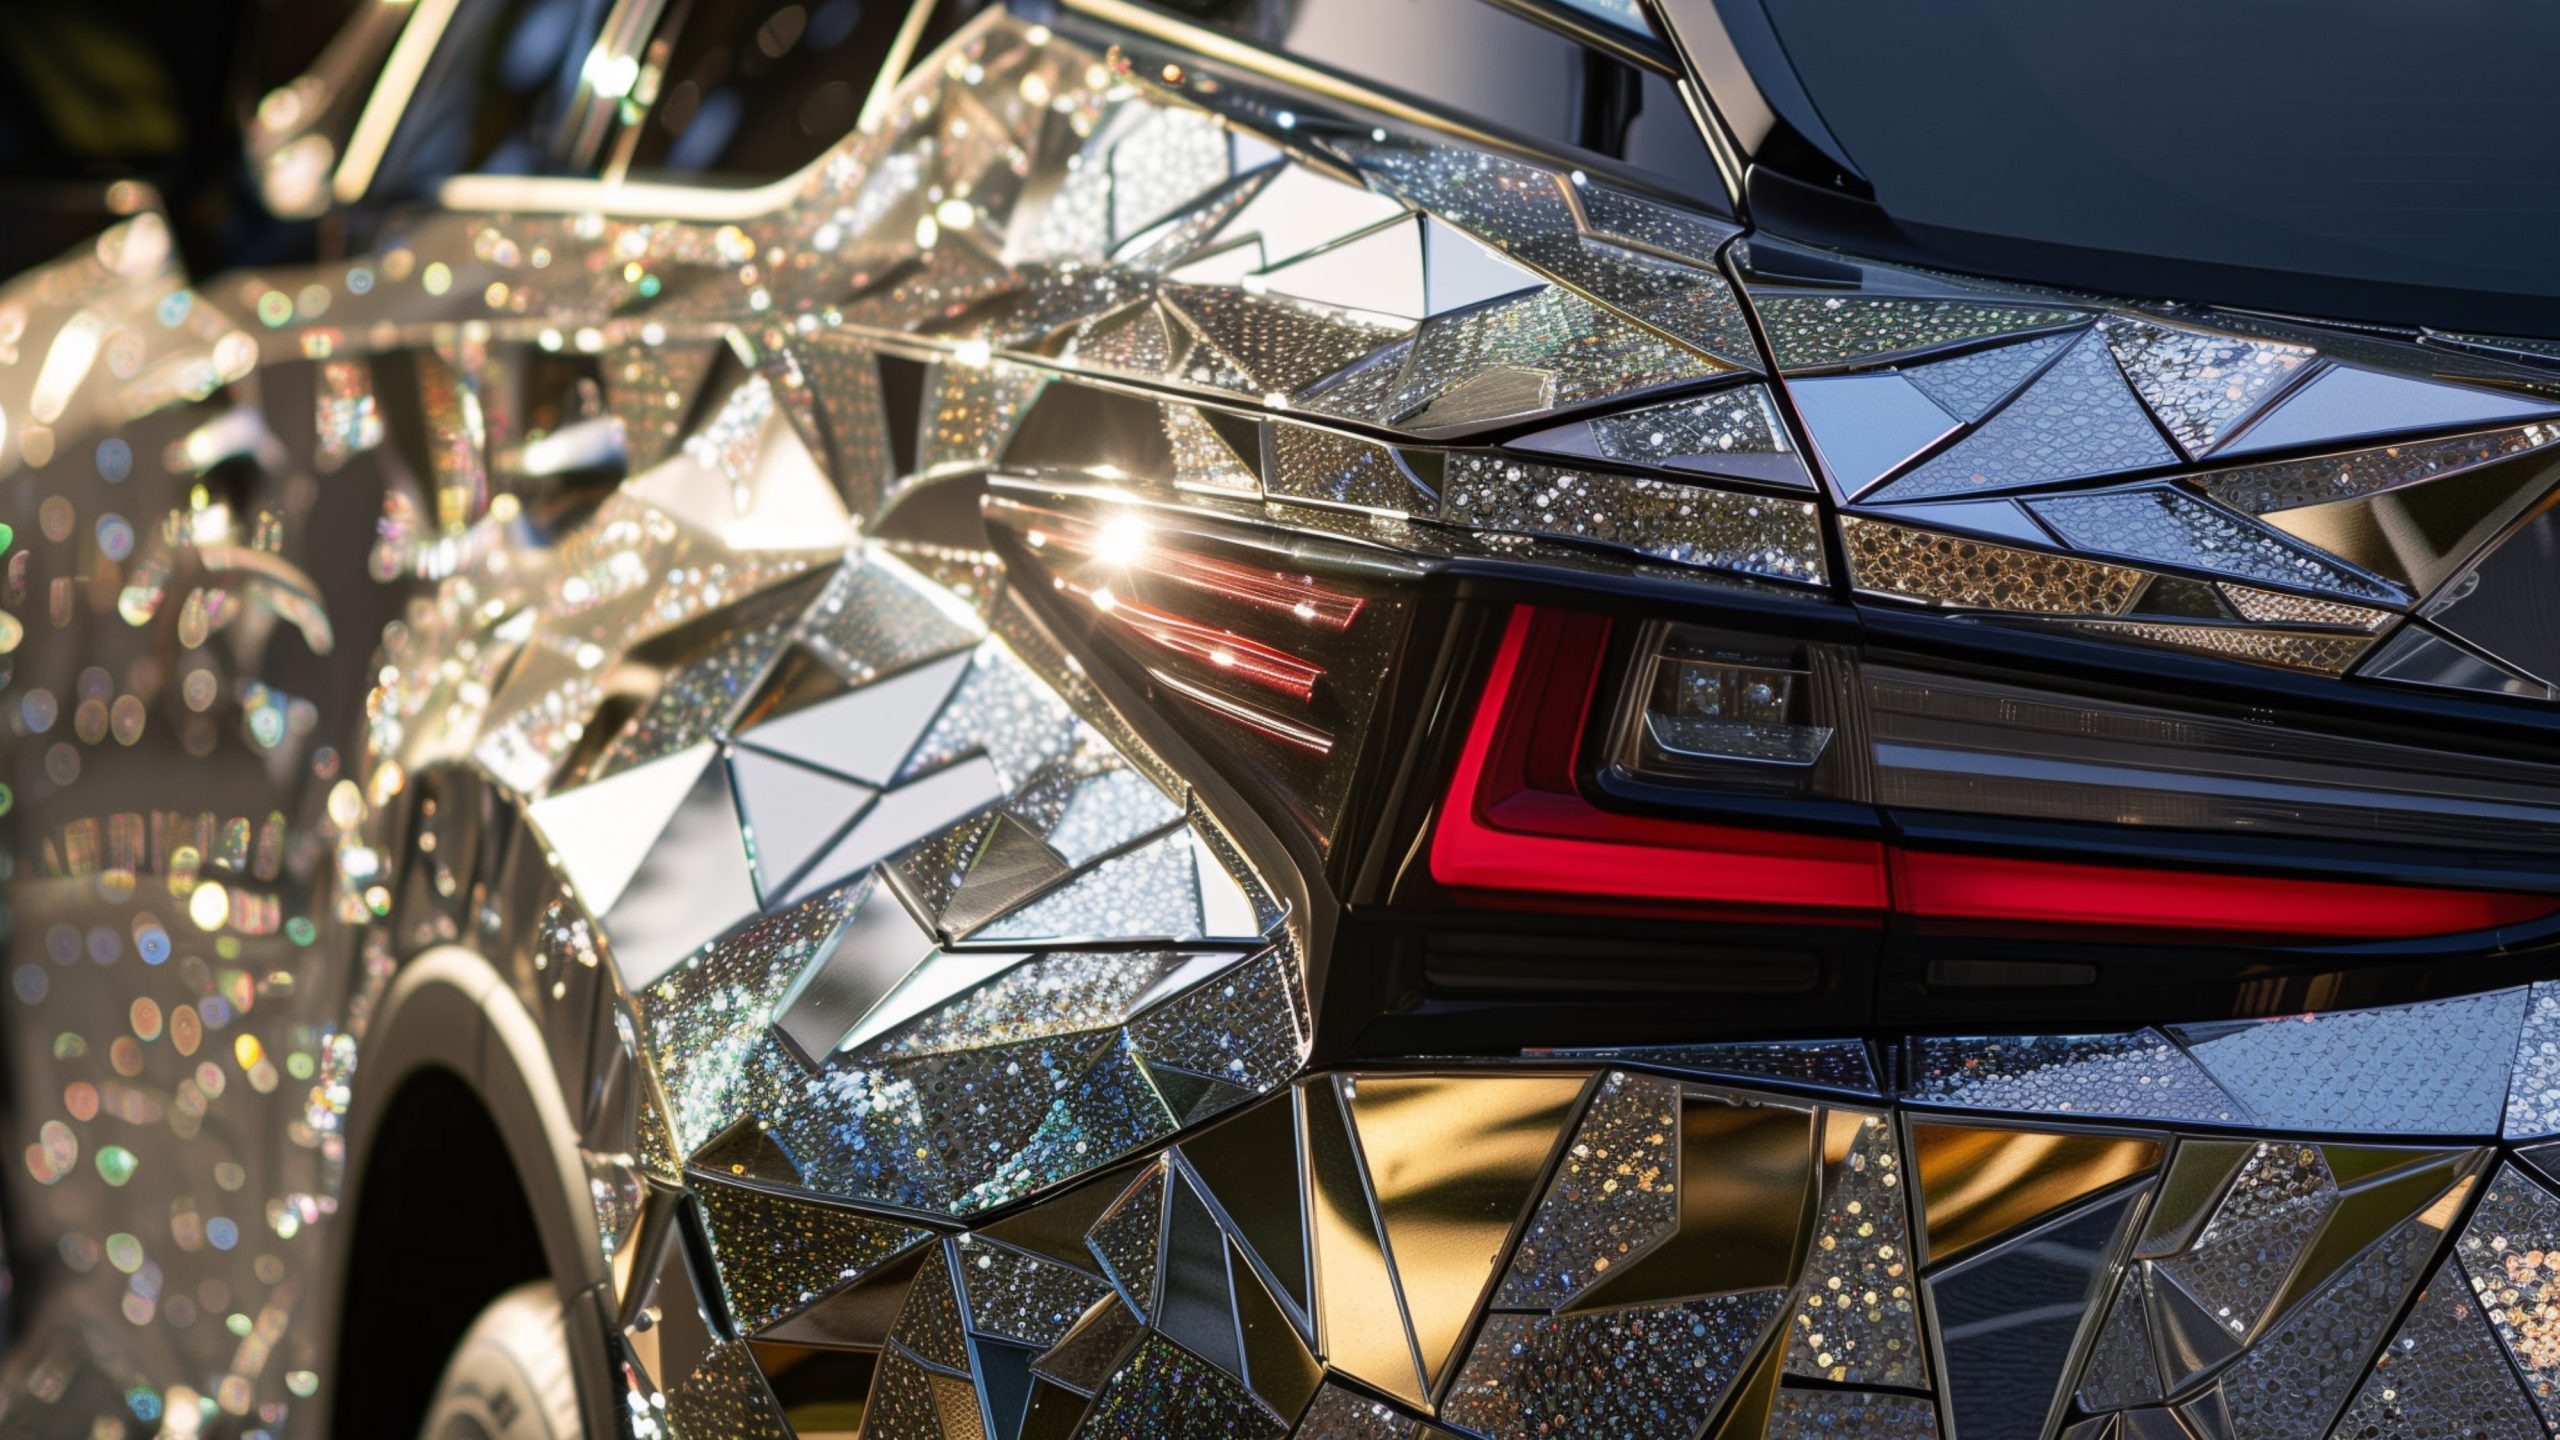 El ponferradino Javier Prado entre los finalistas del concurso Lexus Art Car con un innovador diseño en cristal 4